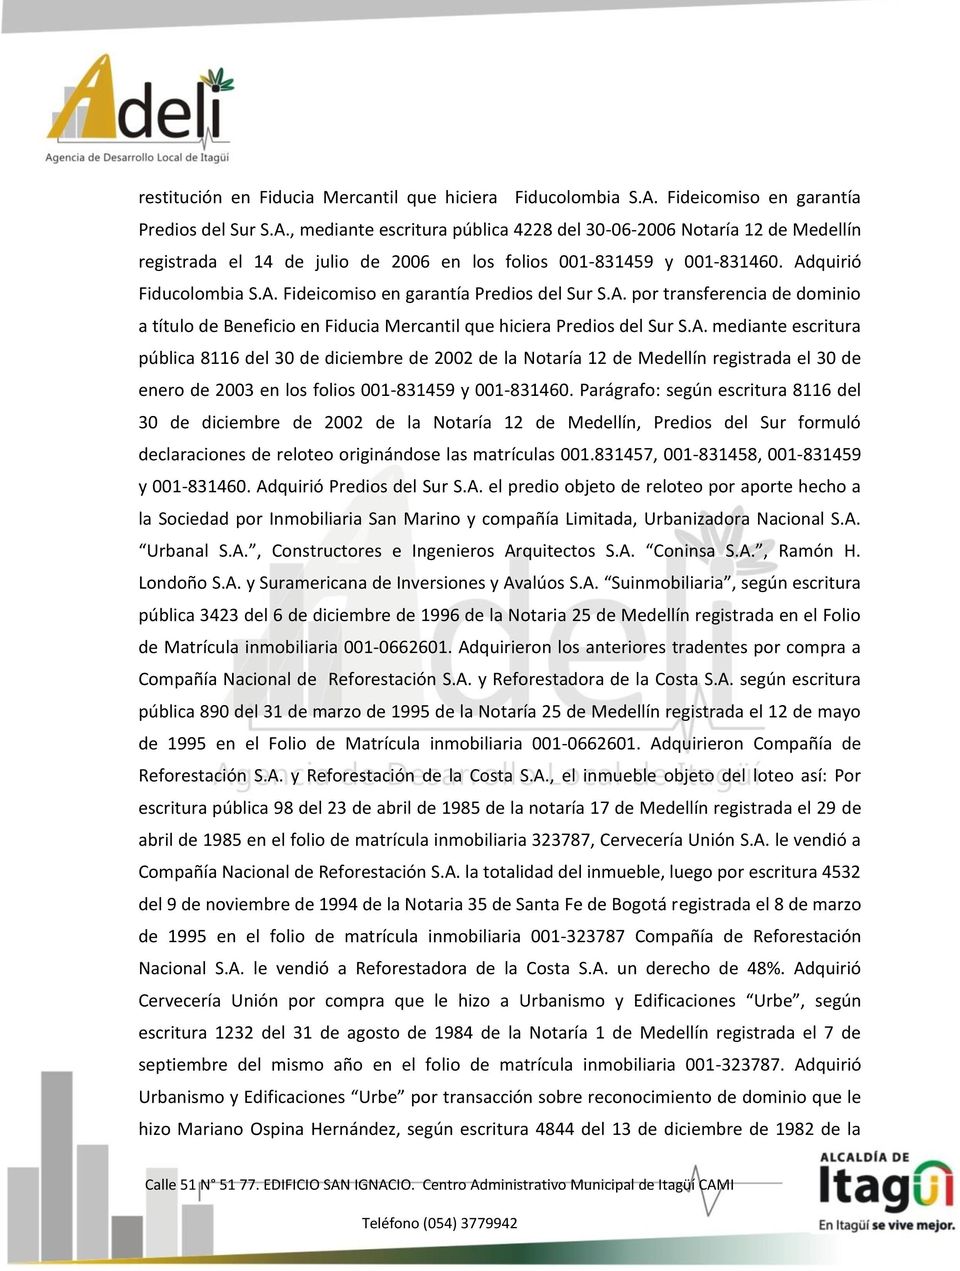 Adquirió Fiducolombia S.A. Fideicomiso en garantía Predios del Sur S.A. por transferencia de dominio a título de Beneficio en Fiducia Mercantil que hiciera Predios del Sur S.A. mediante escritura pública 8116 del 30 de diciembre de 2002 de la Notaría 12 de Medellín registrada el 30 de enero de 2003 en los folios 001-831459 y 001-831460.